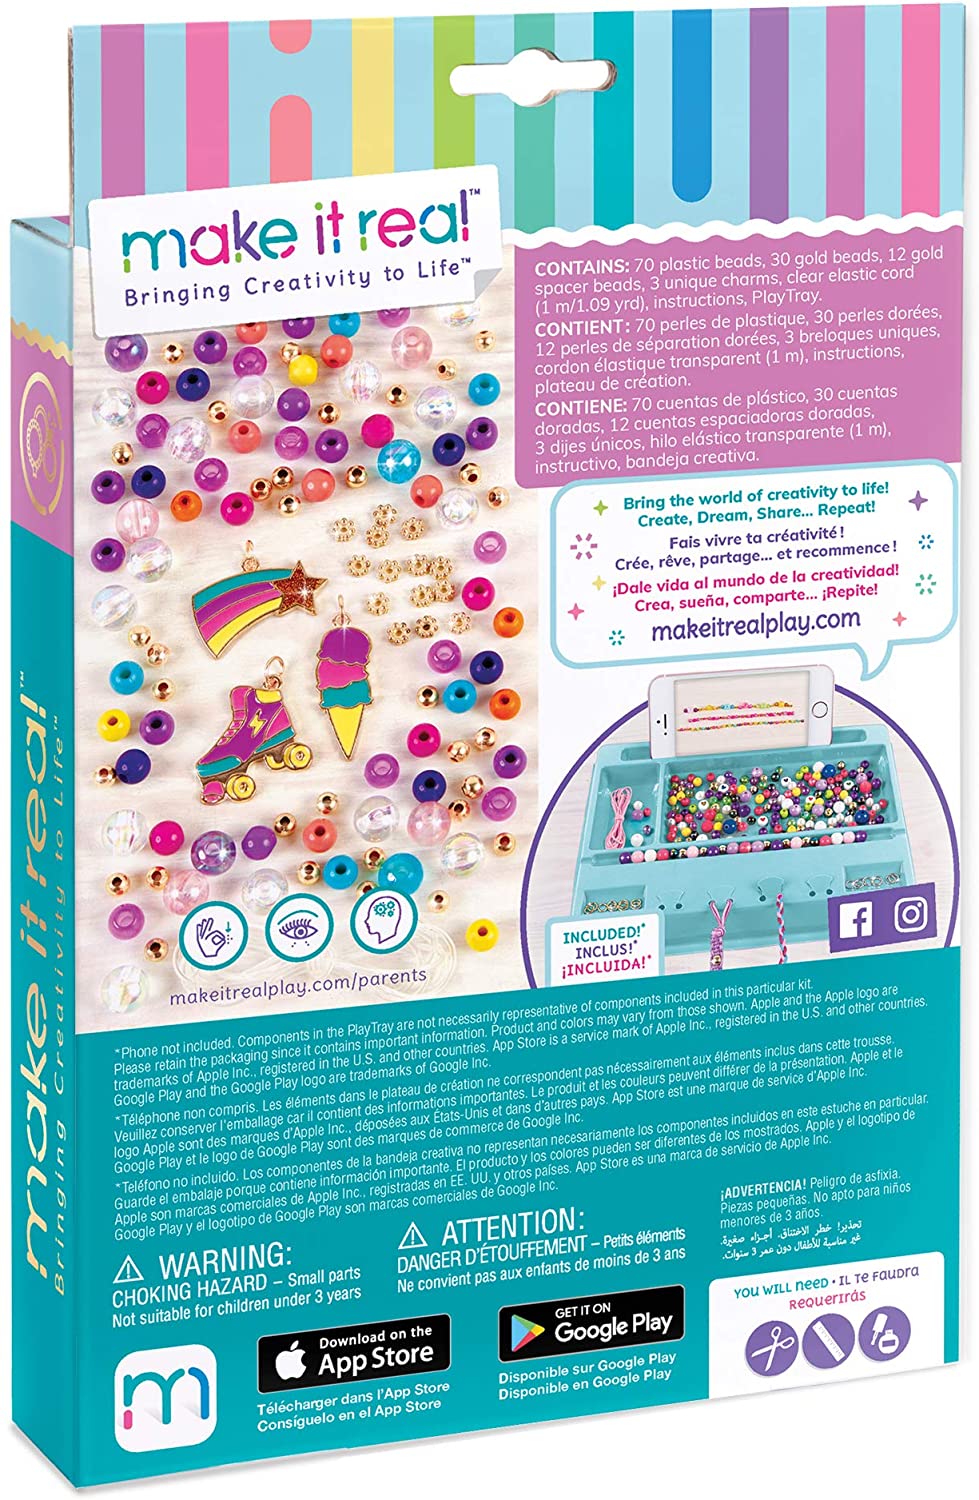 Make It Real Rainbow Dream Jewelry Kit fai da te per creare braccialetti con ciondoli per ragazze